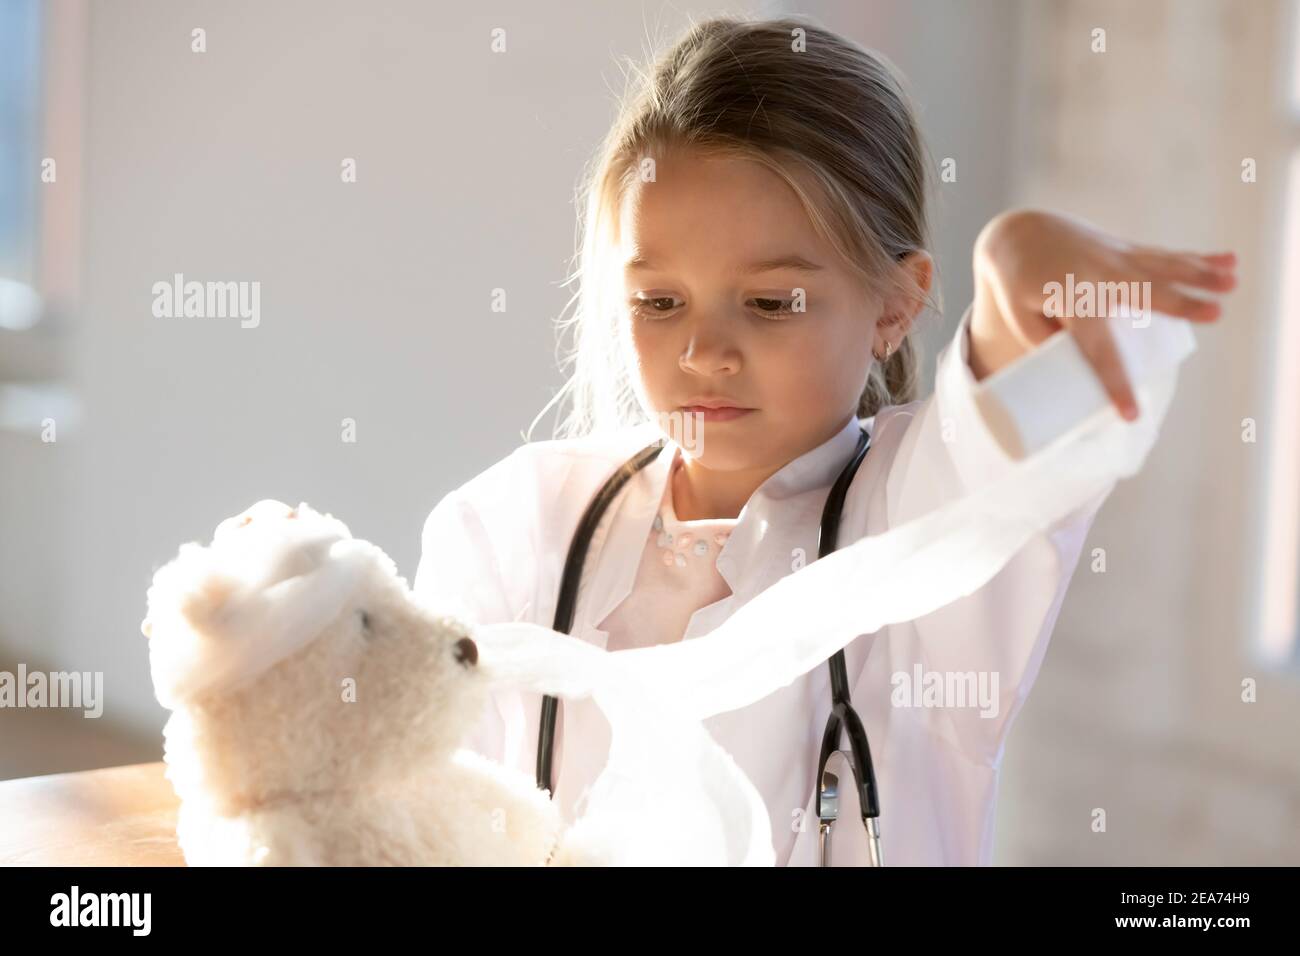 Kleines Mädchen Kind spielen in Kinder Krankenhaus Heilung Spielzeug  Stockfotografie - Alamy